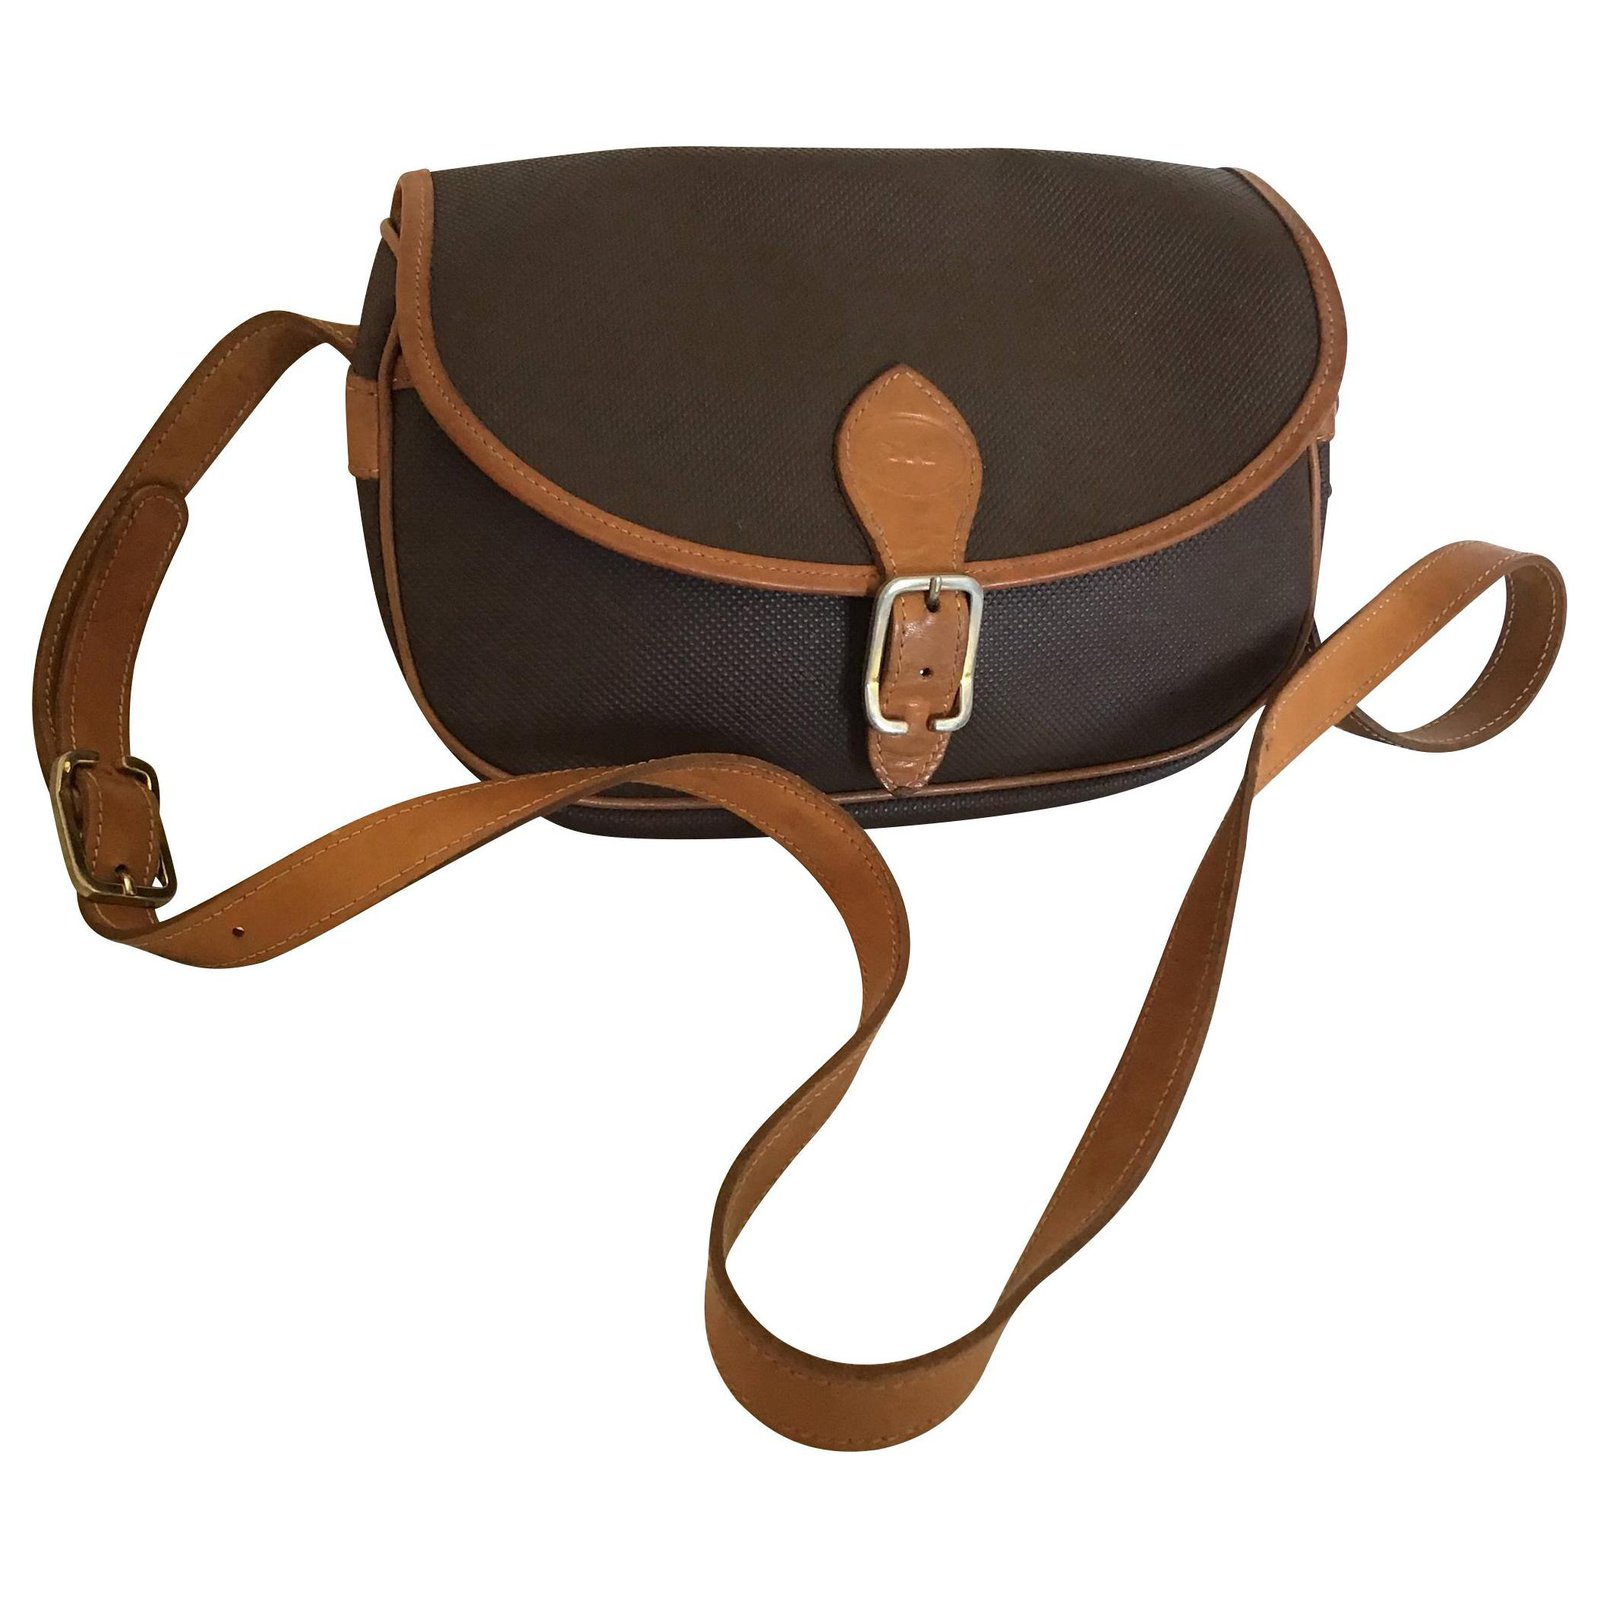 Vintage Longchamp coated canvas/leather shoulder bag